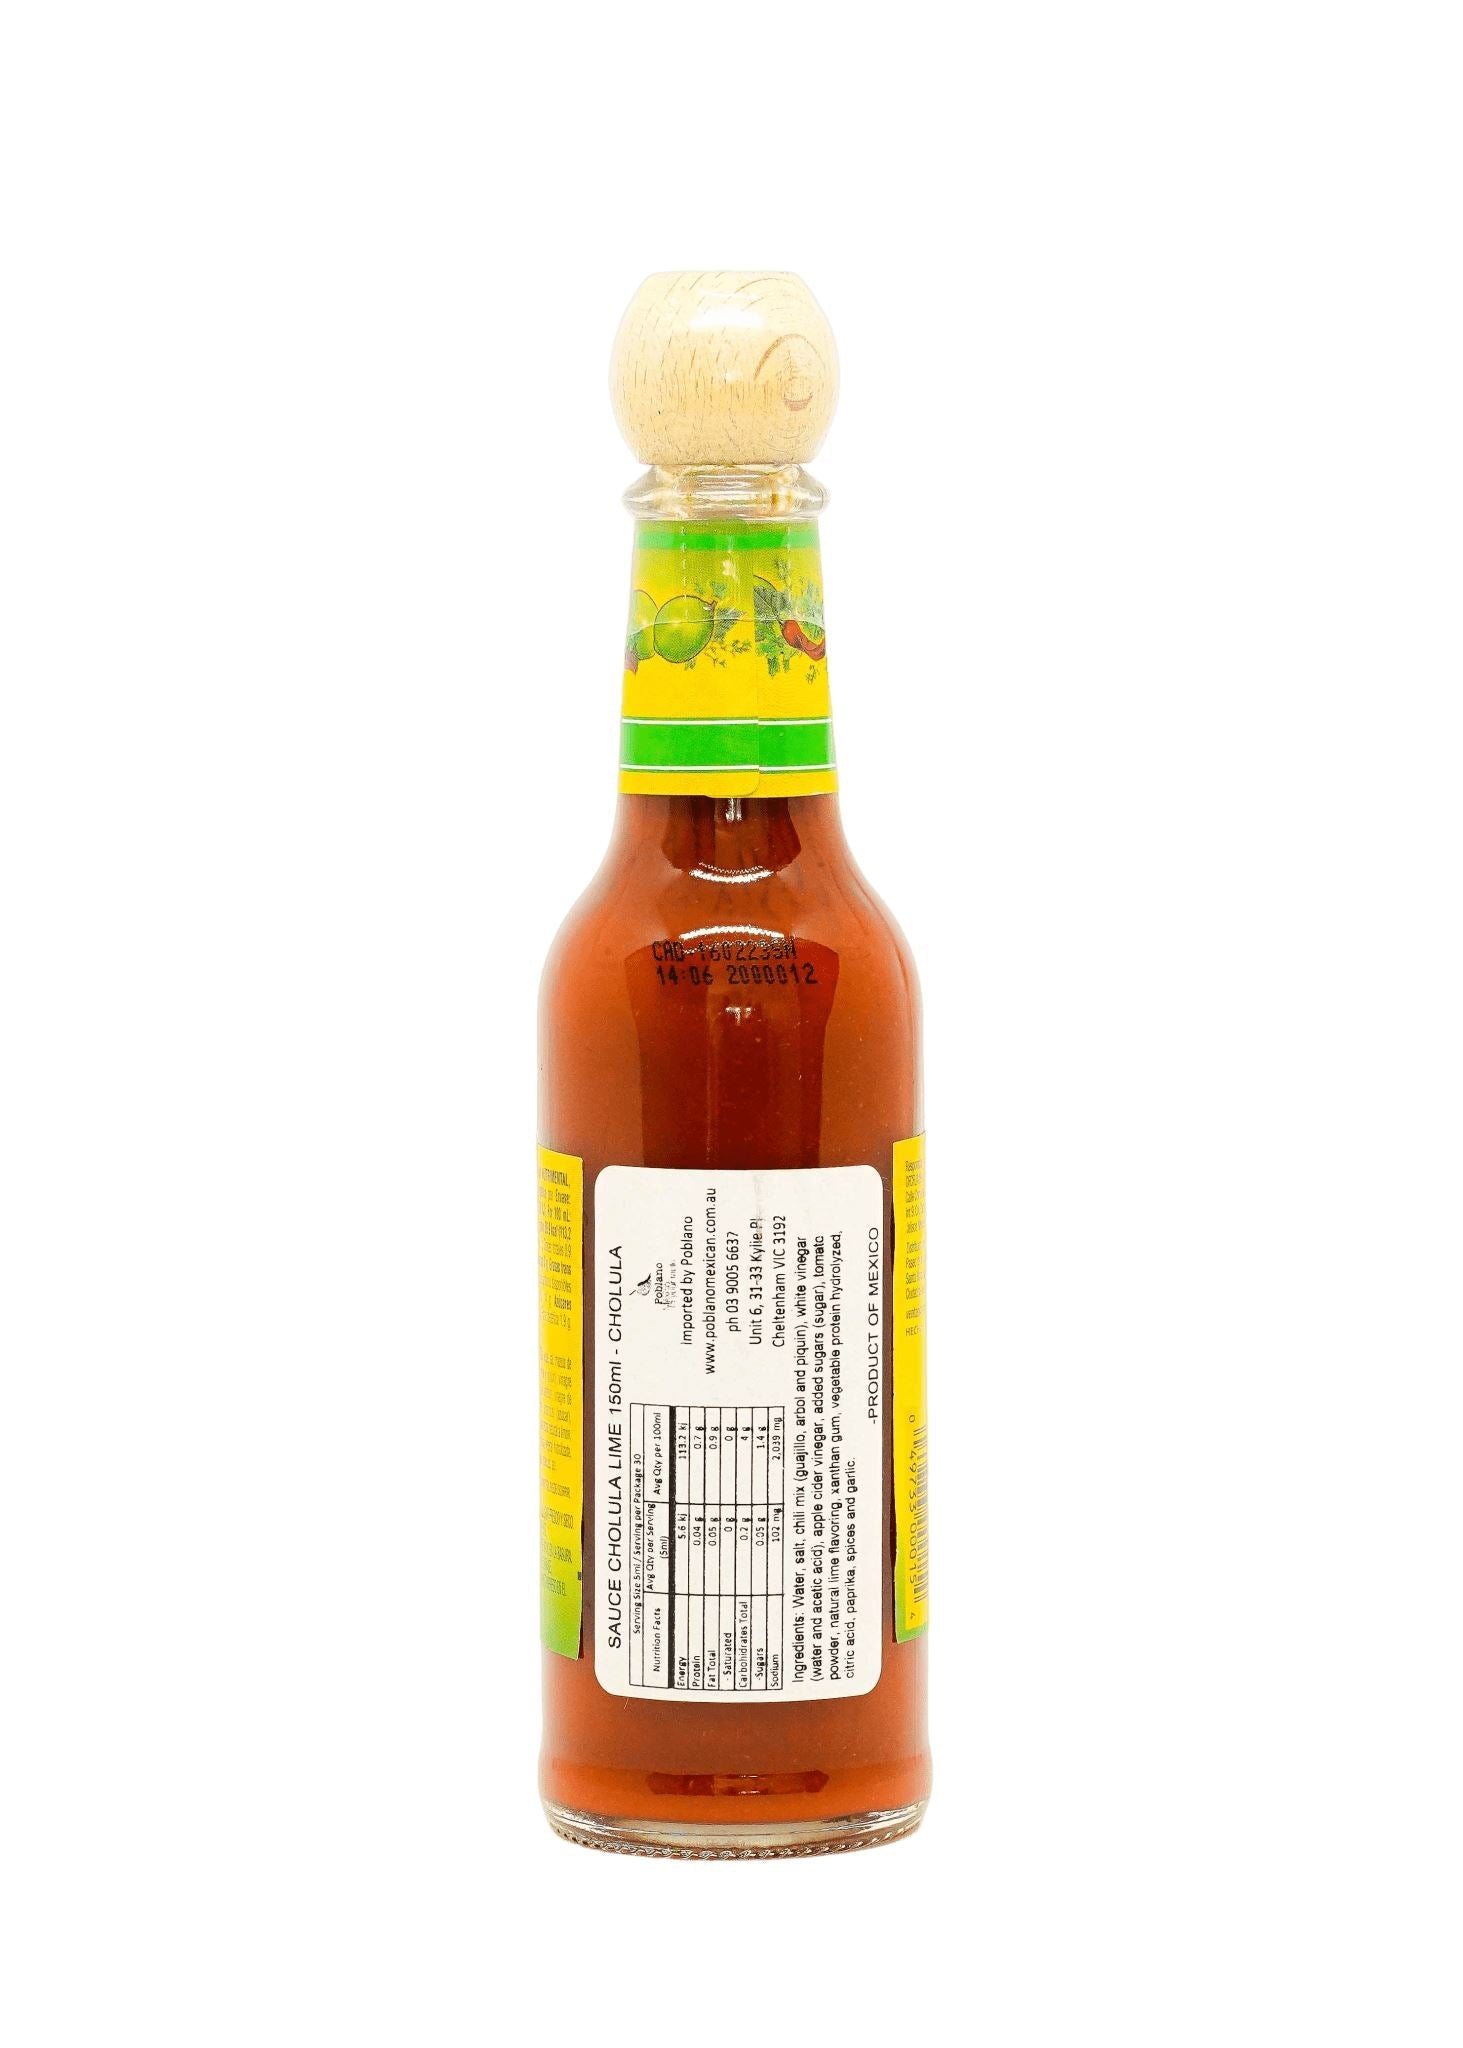 Cholula Chillie Lime (Limon) Hot Sauce 150ml Sauces Casa Cuervo 